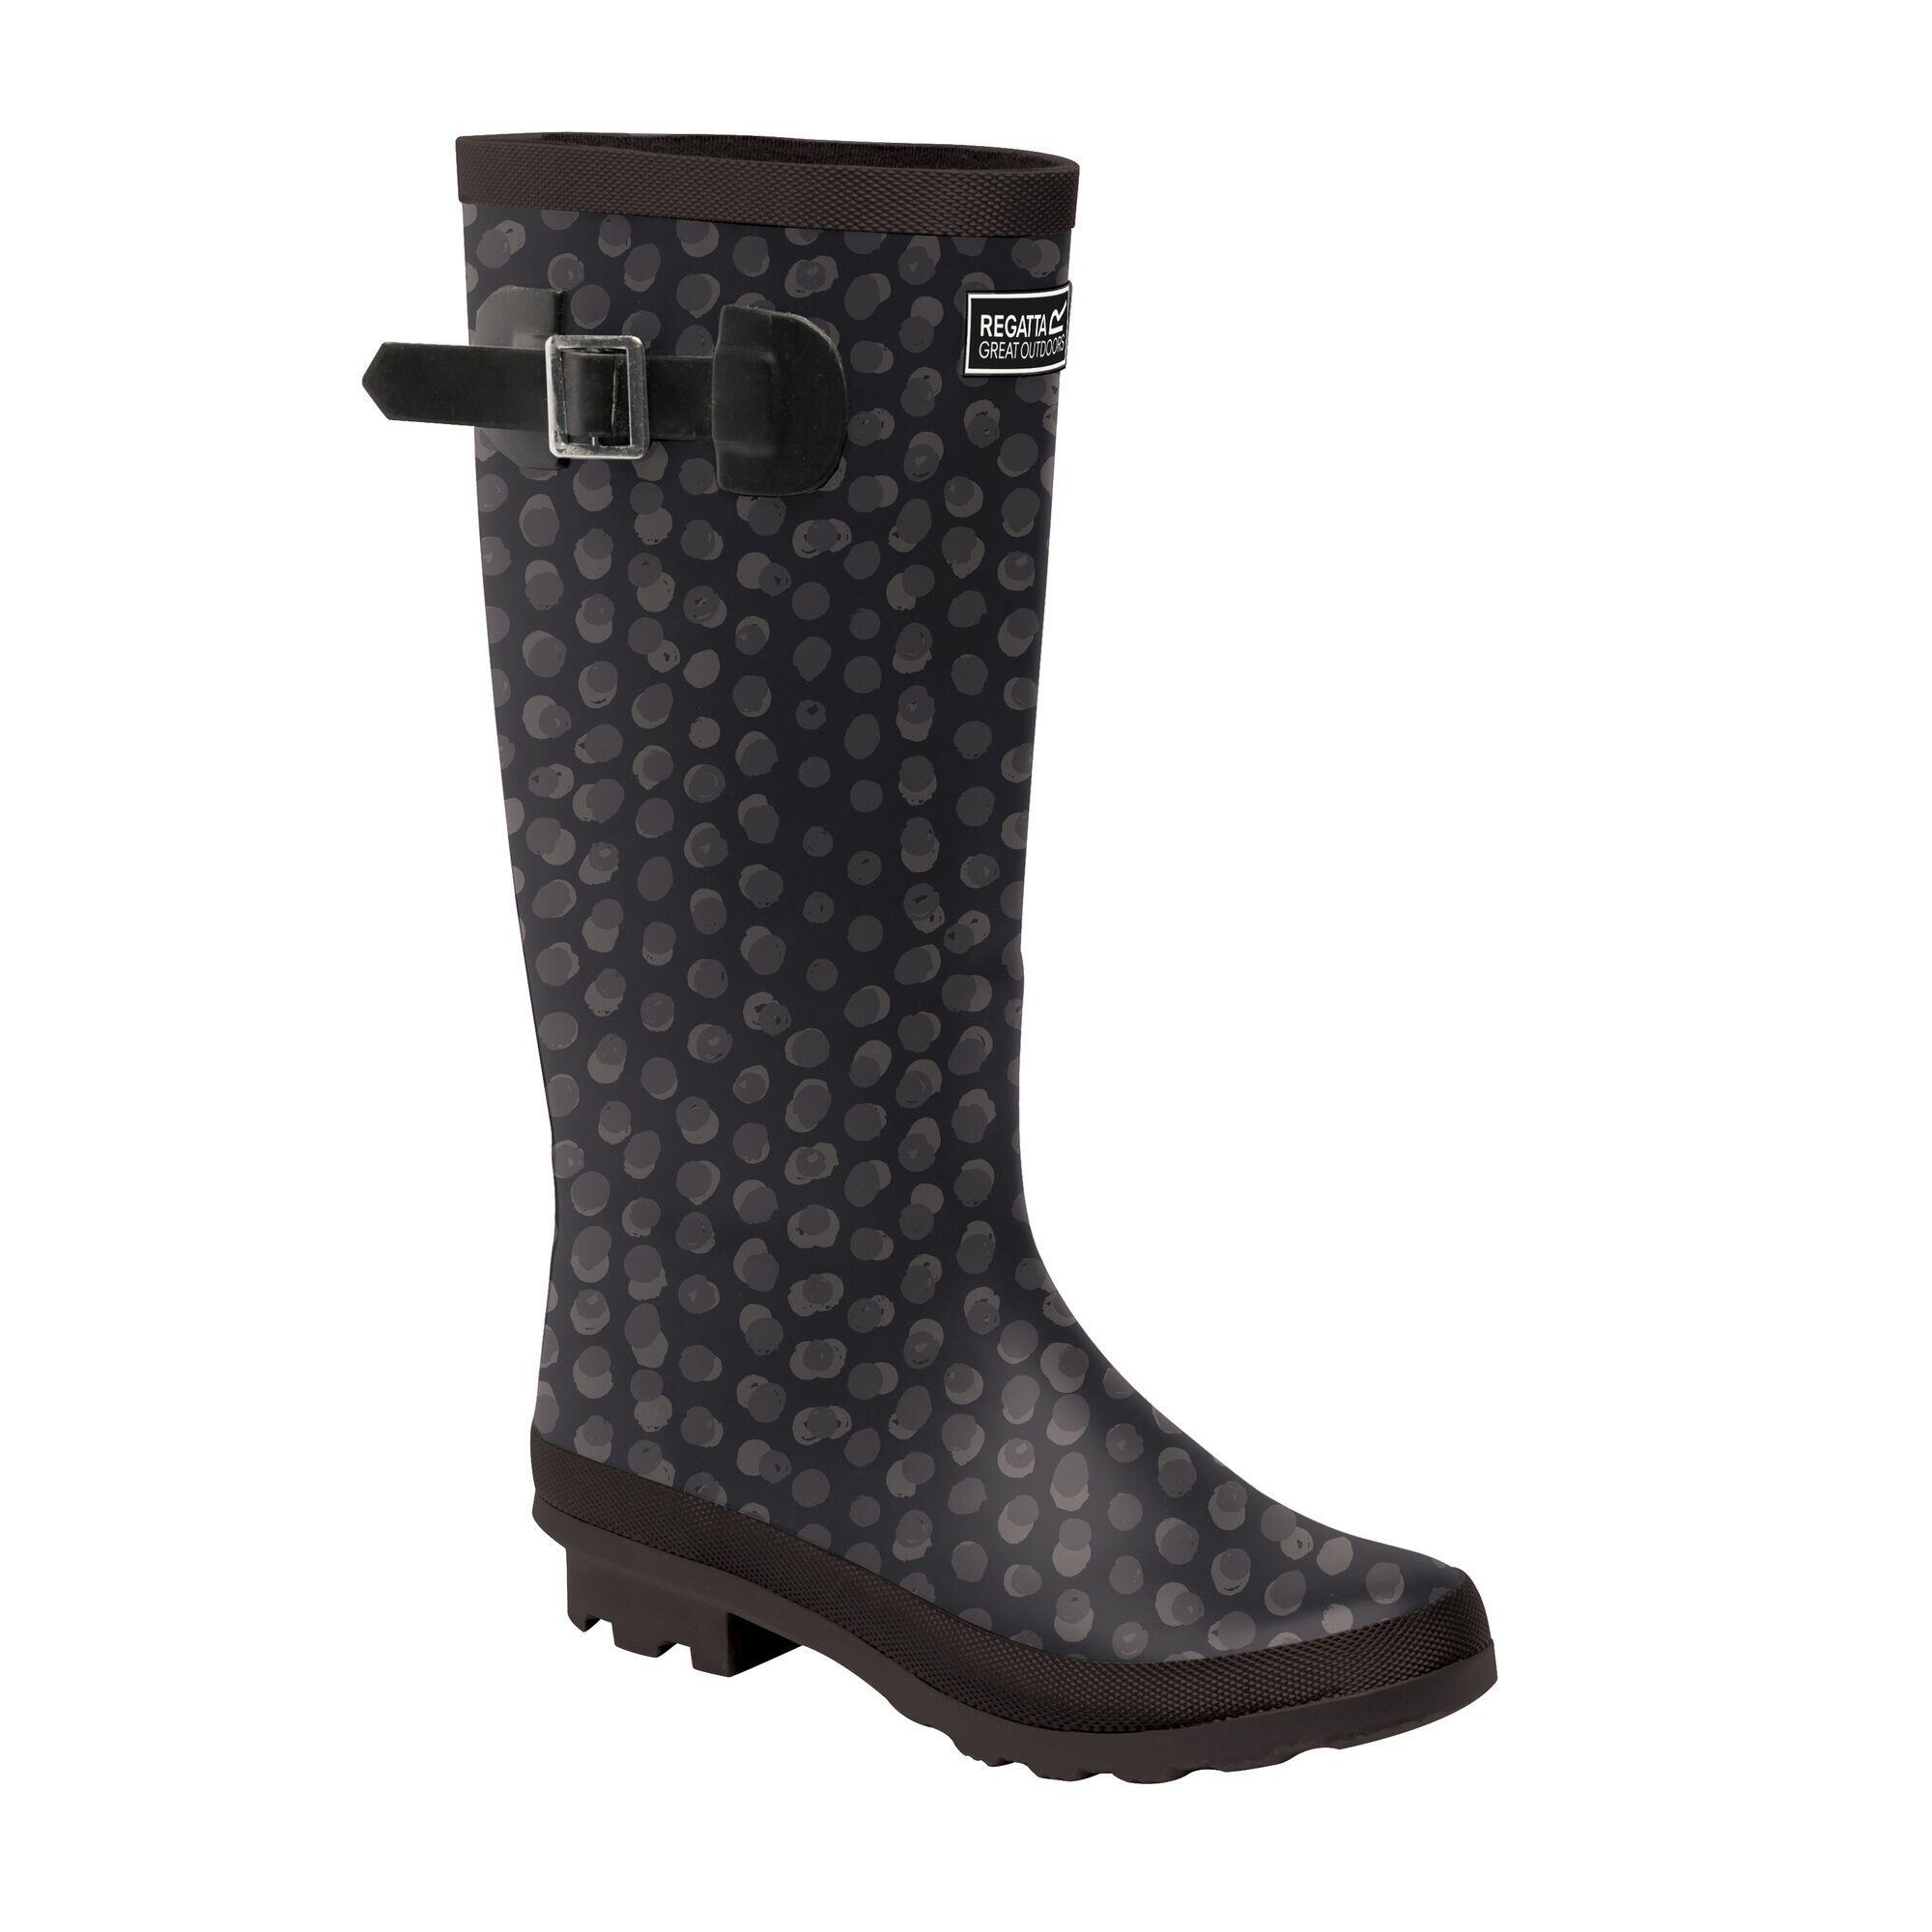 Essensole Black wellies discount 48% Black 38                  EU WOMEN FASHION Footwear Waterproof Boots 